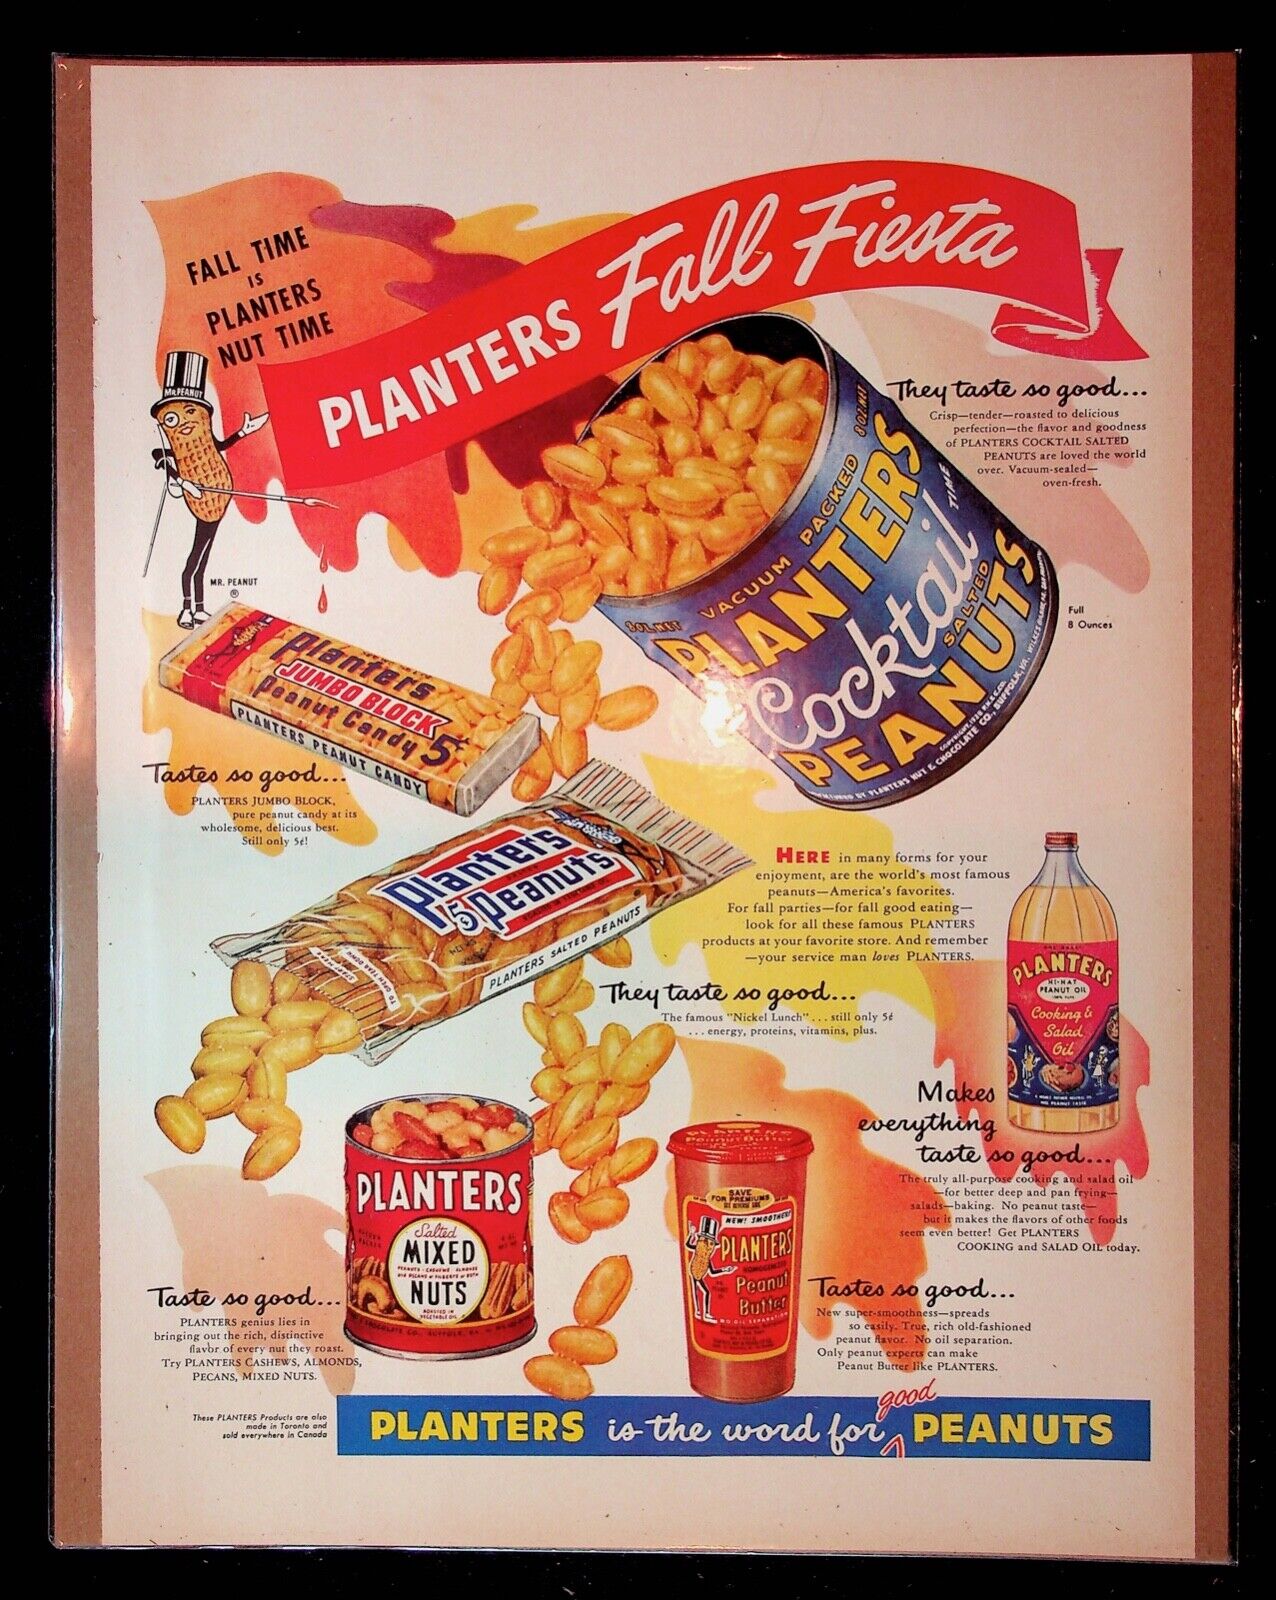 1950s Planters Peanuts, Nuts, Peanut Butter Fall Fiesta Art Vintage Print Ad